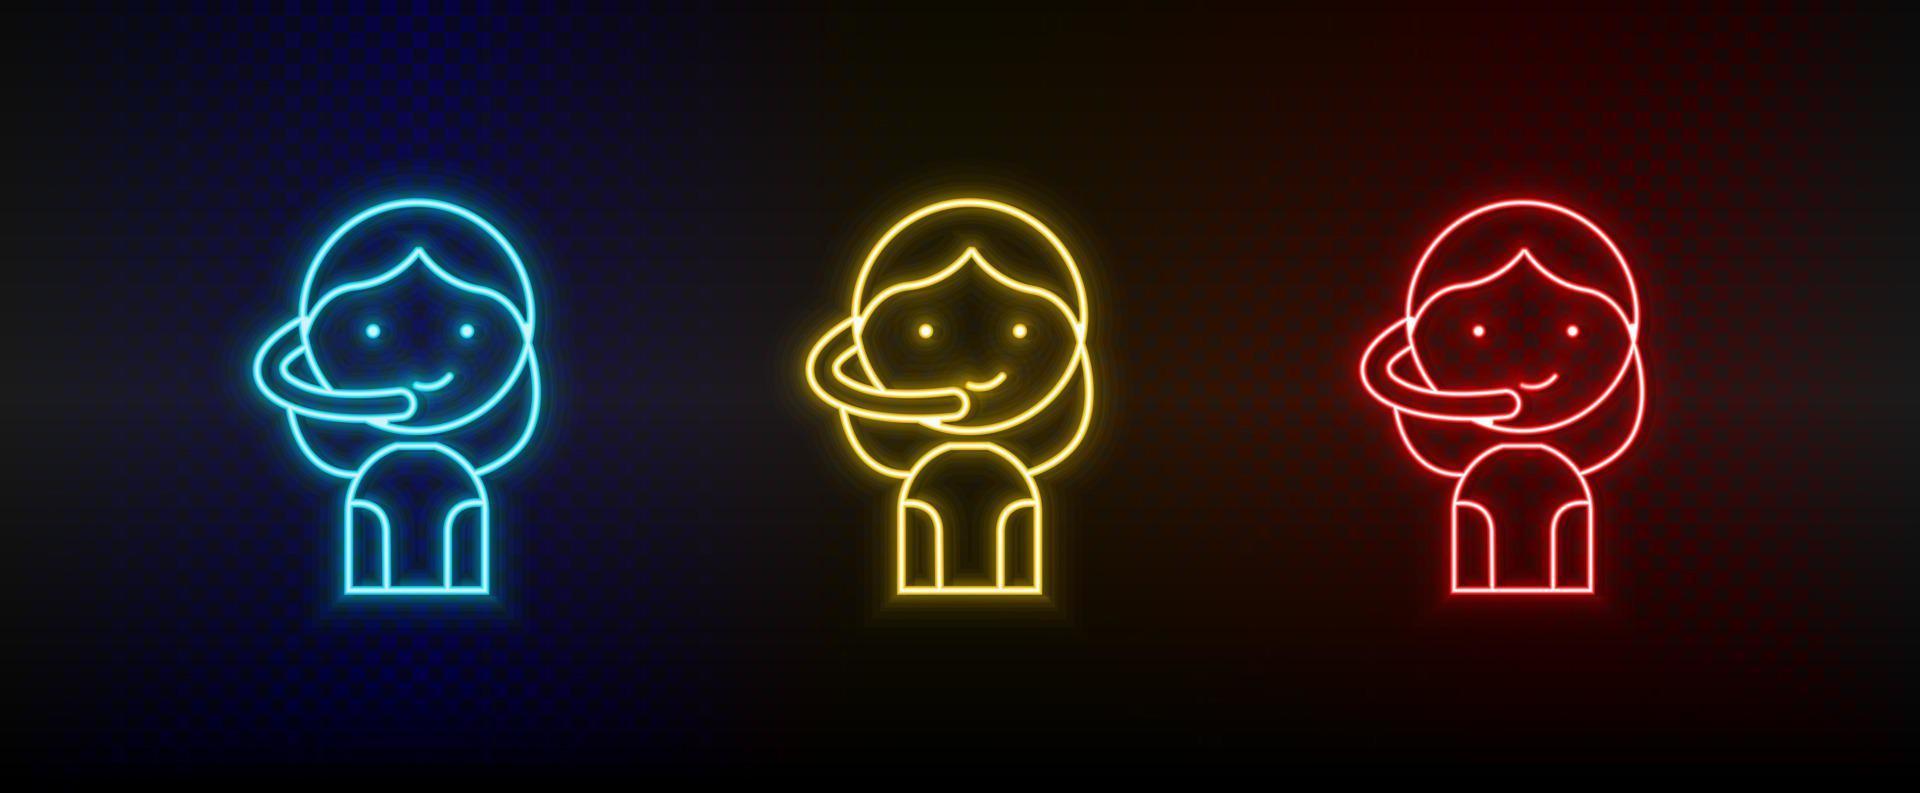 Neon-Symbole. Gamer Mädchen Avatar Retro. Satz von roten, blauen, gelben Neonvektorsymbolen auf dunklem Hintergrund vektor